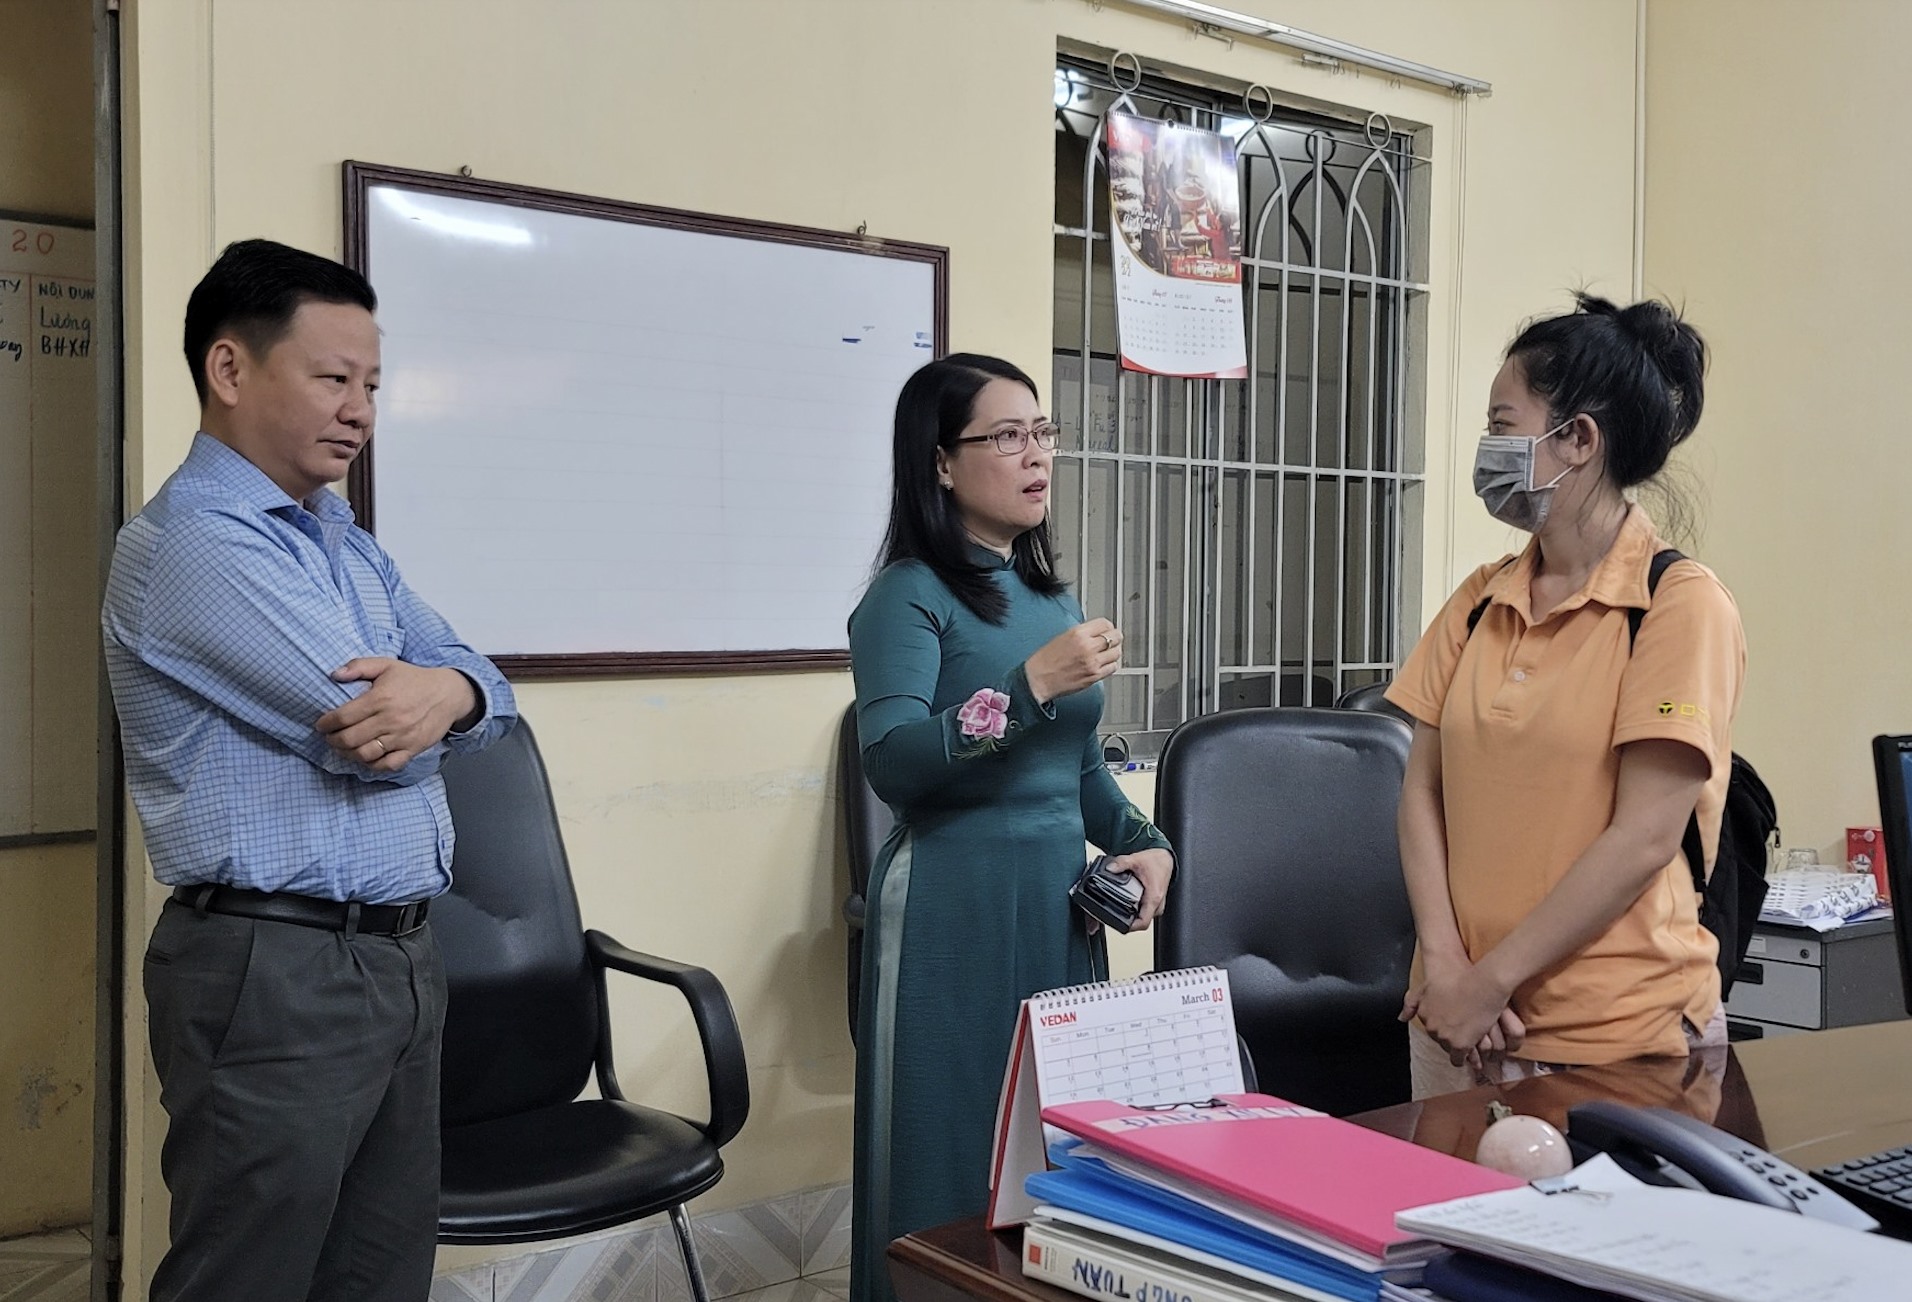 Đình chỉ công việc giám đốc nước ngoài đánh nữ lao động ở Đồng Nai